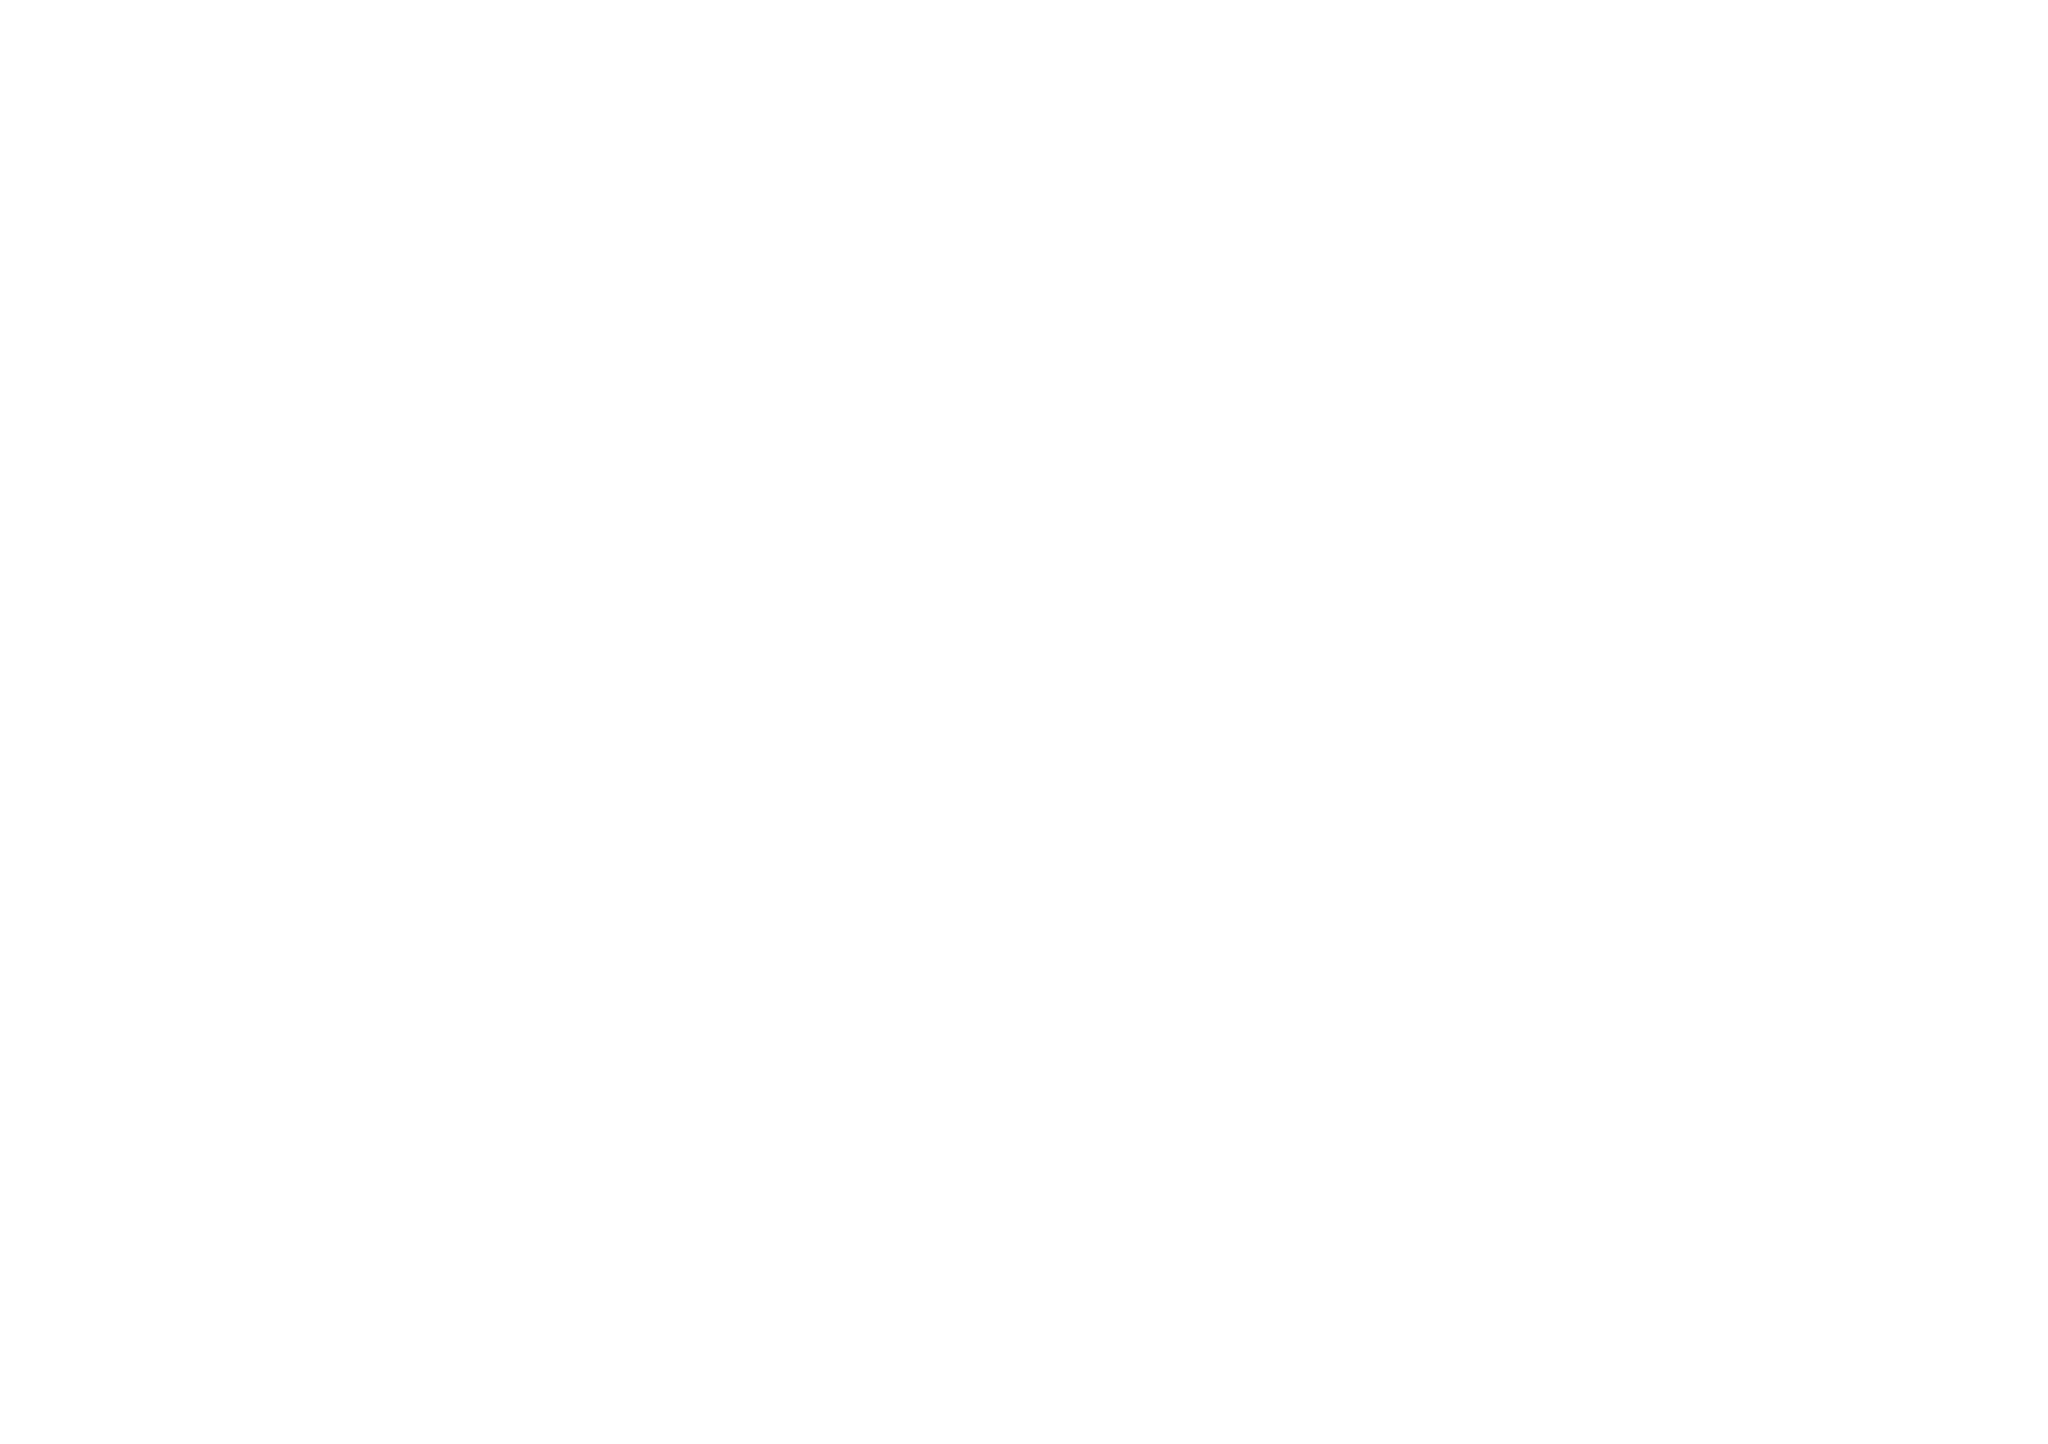 Conselho Nacional de Dança Desportiva